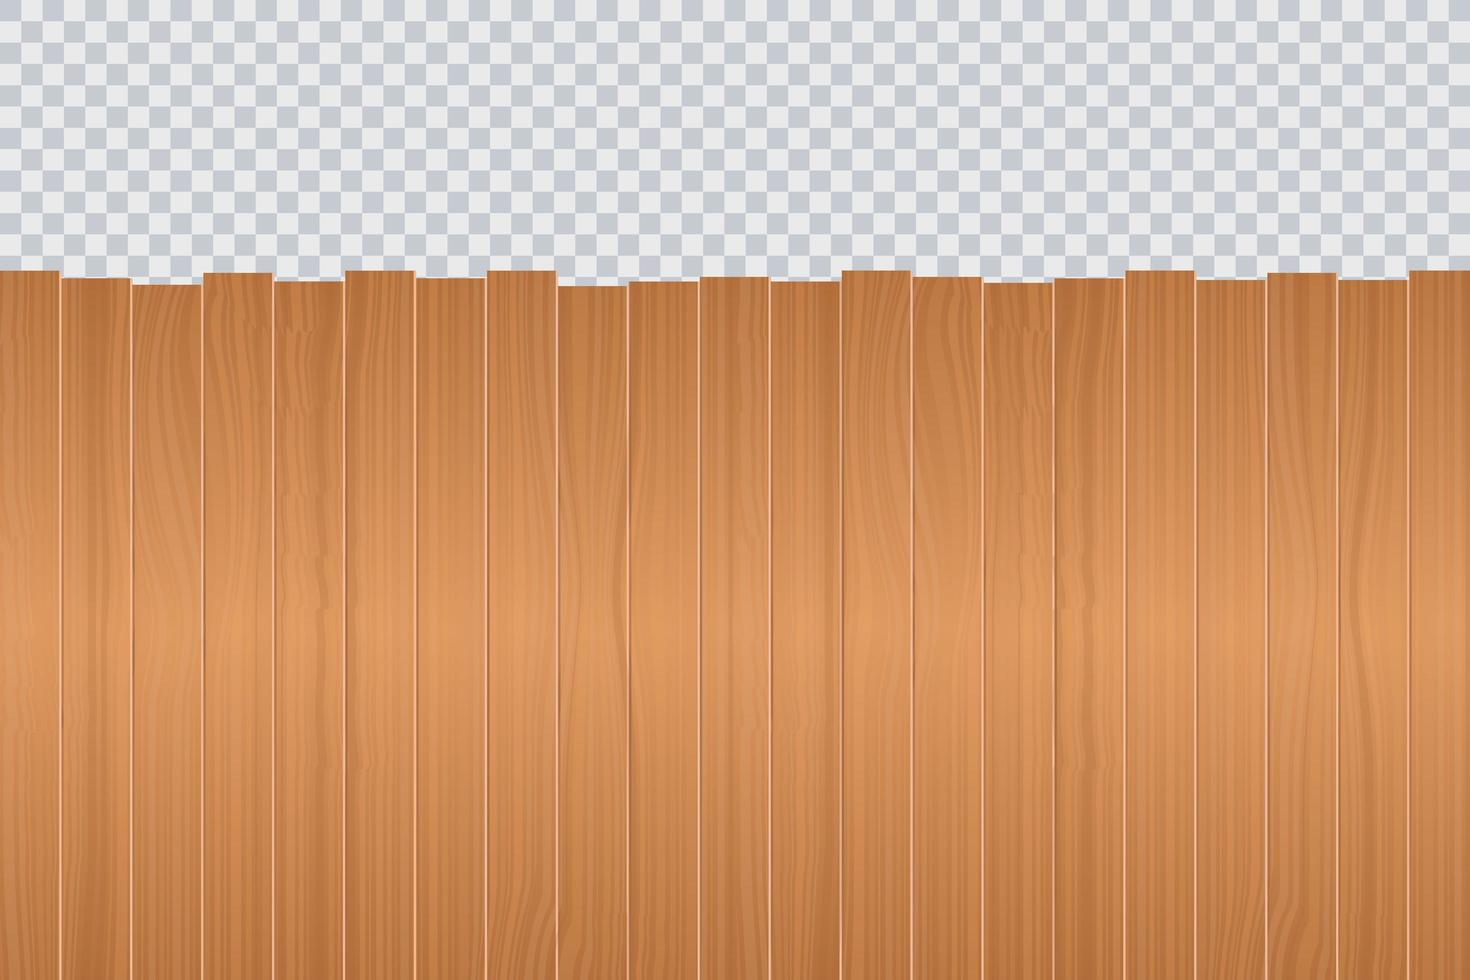 Wooden background vector design illustration